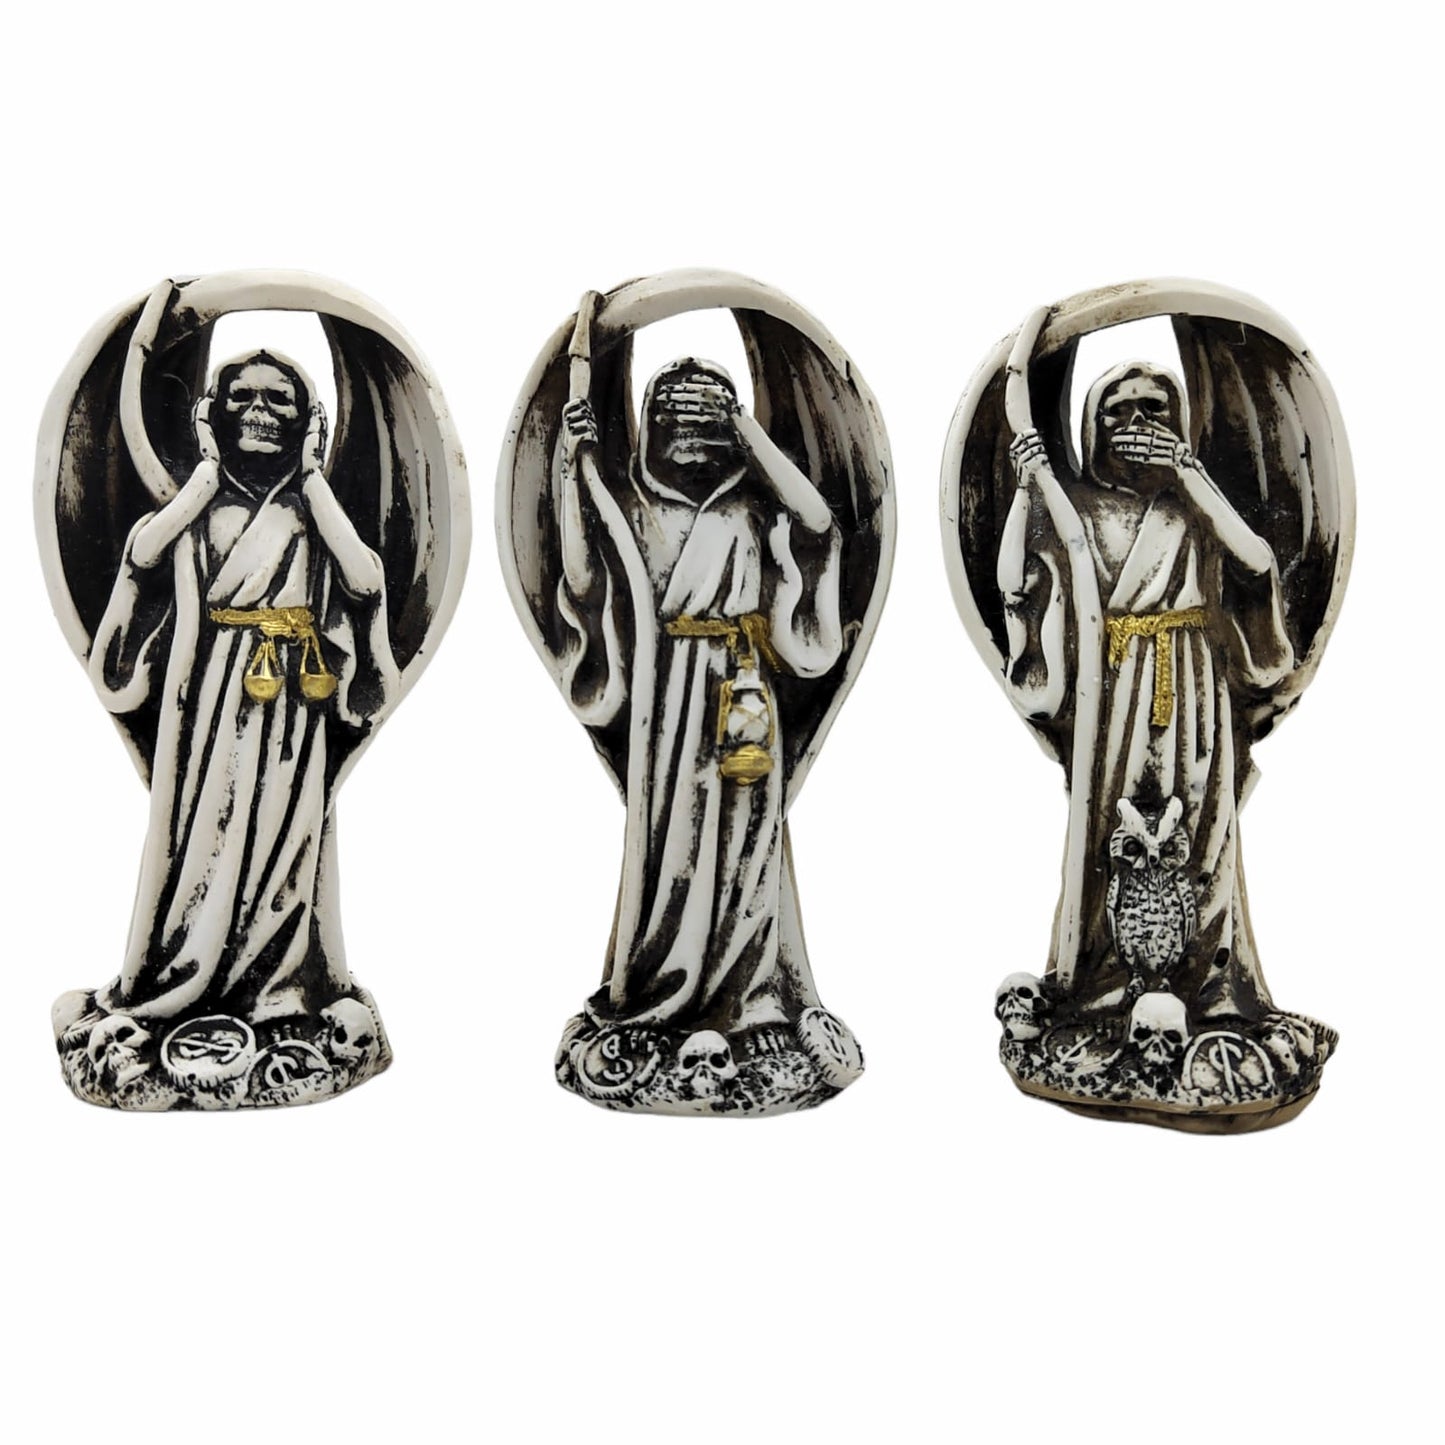 Santa Muerte Arcangel 3 Virtues 13cm